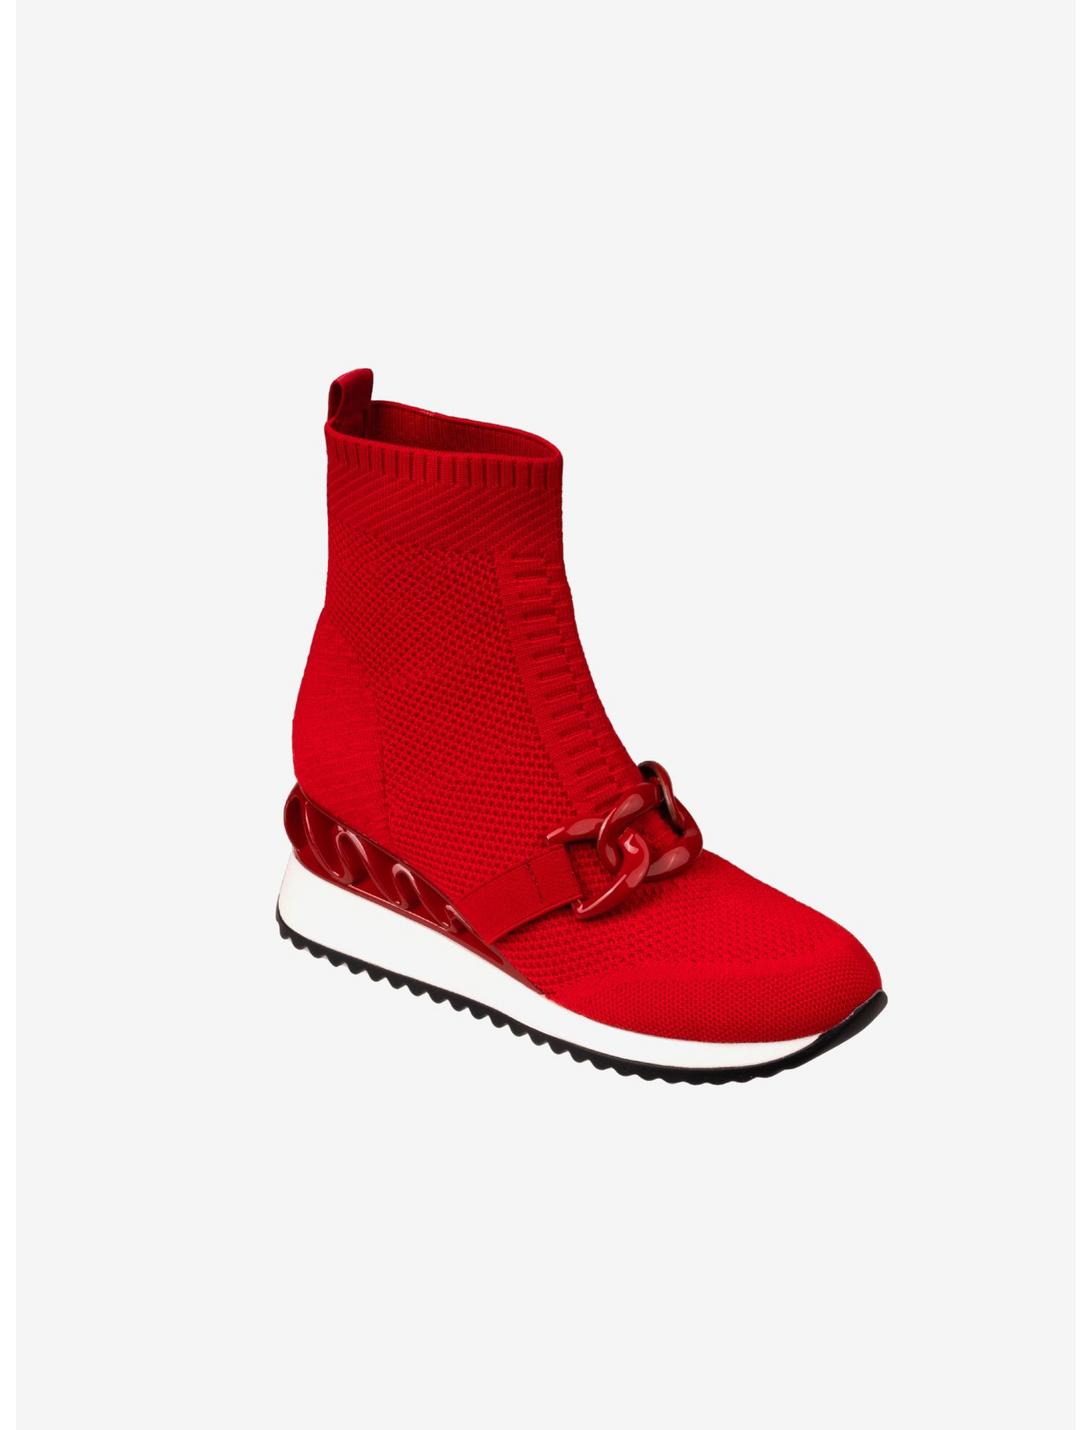 Brooklyn Wedge Sneaker Red, RED, hi-res